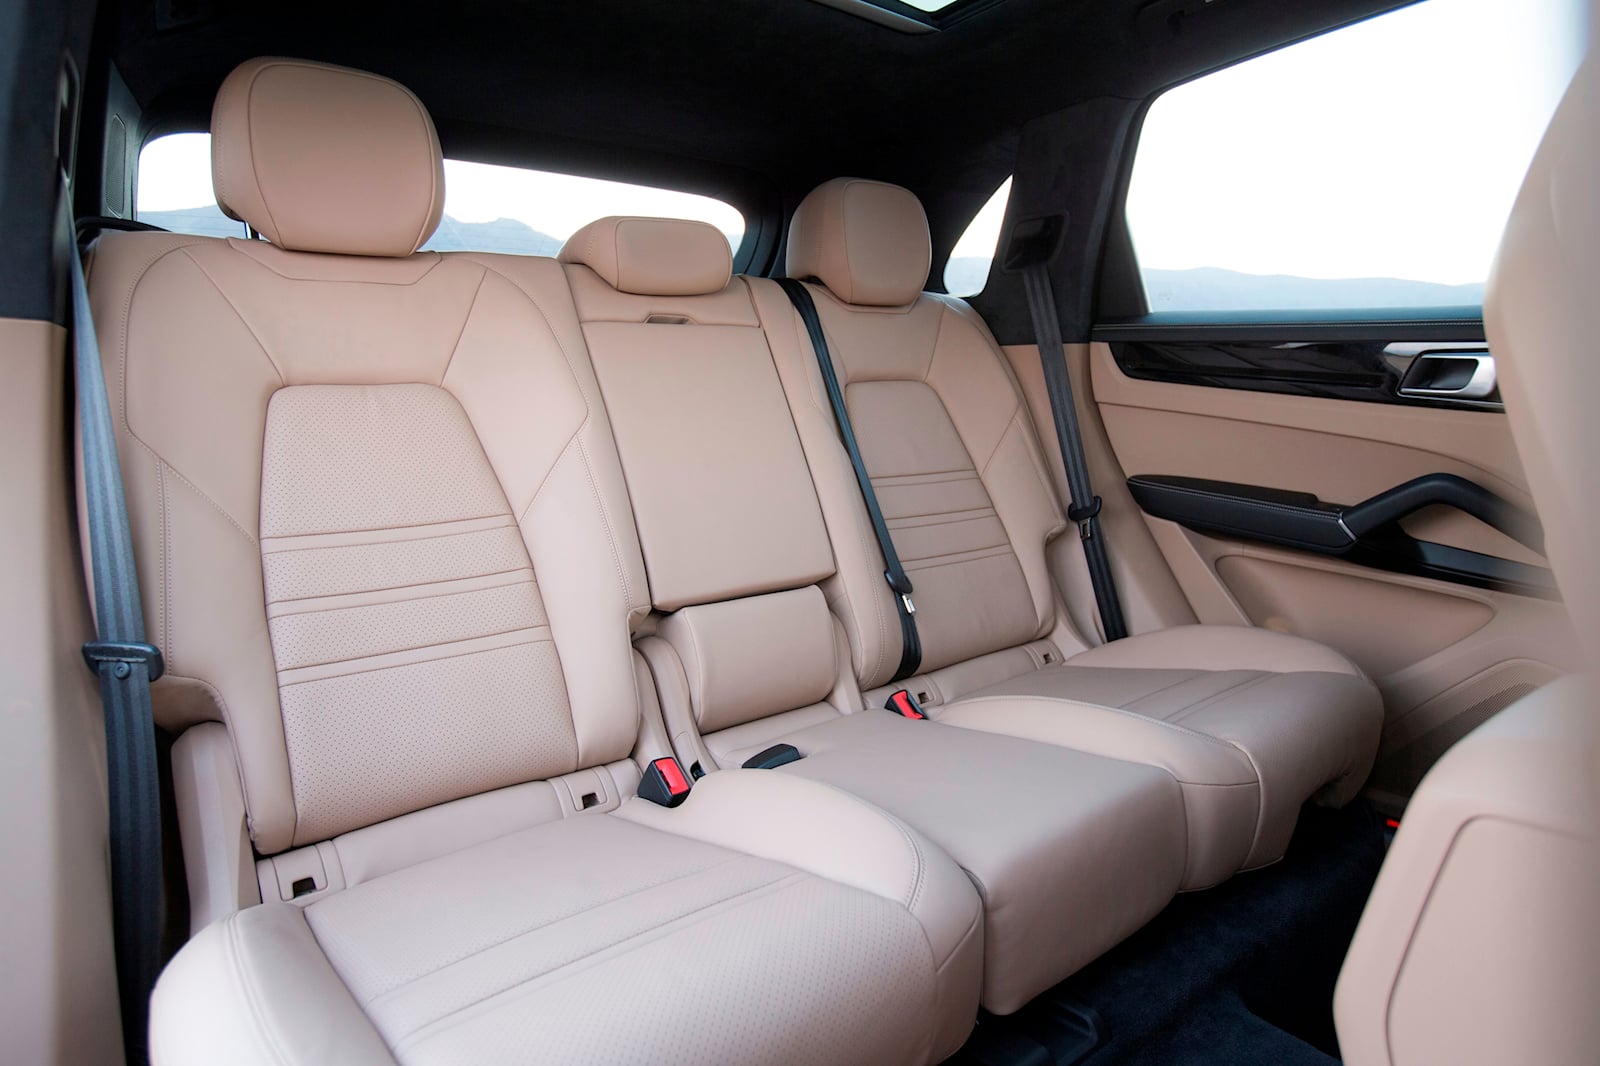 Porsche Cayenne Turbo S interior - Seats